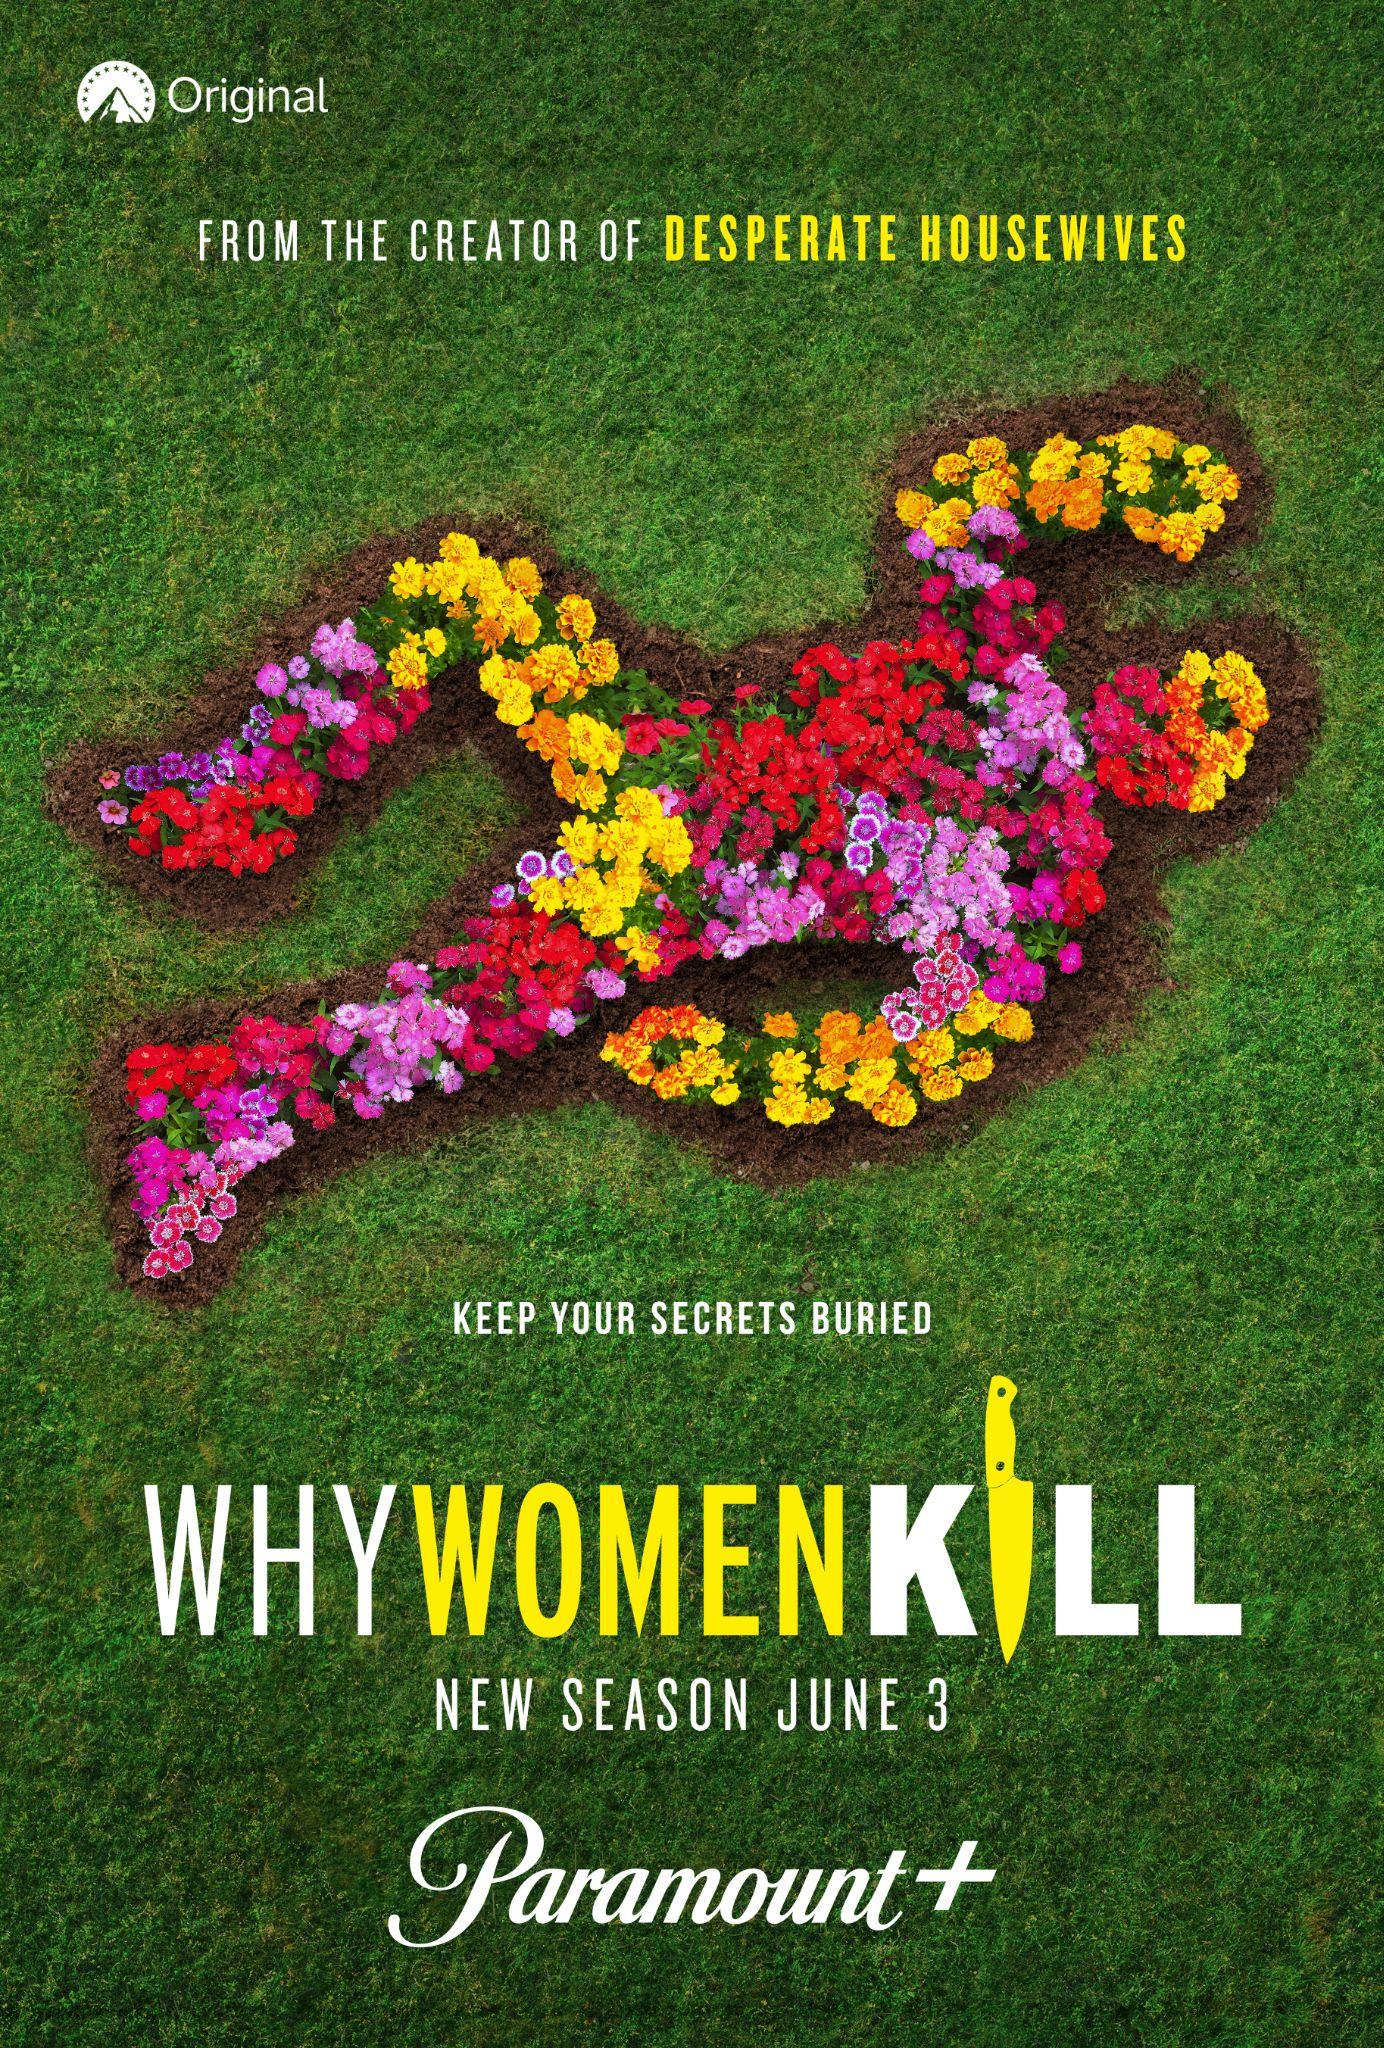 Why women kill